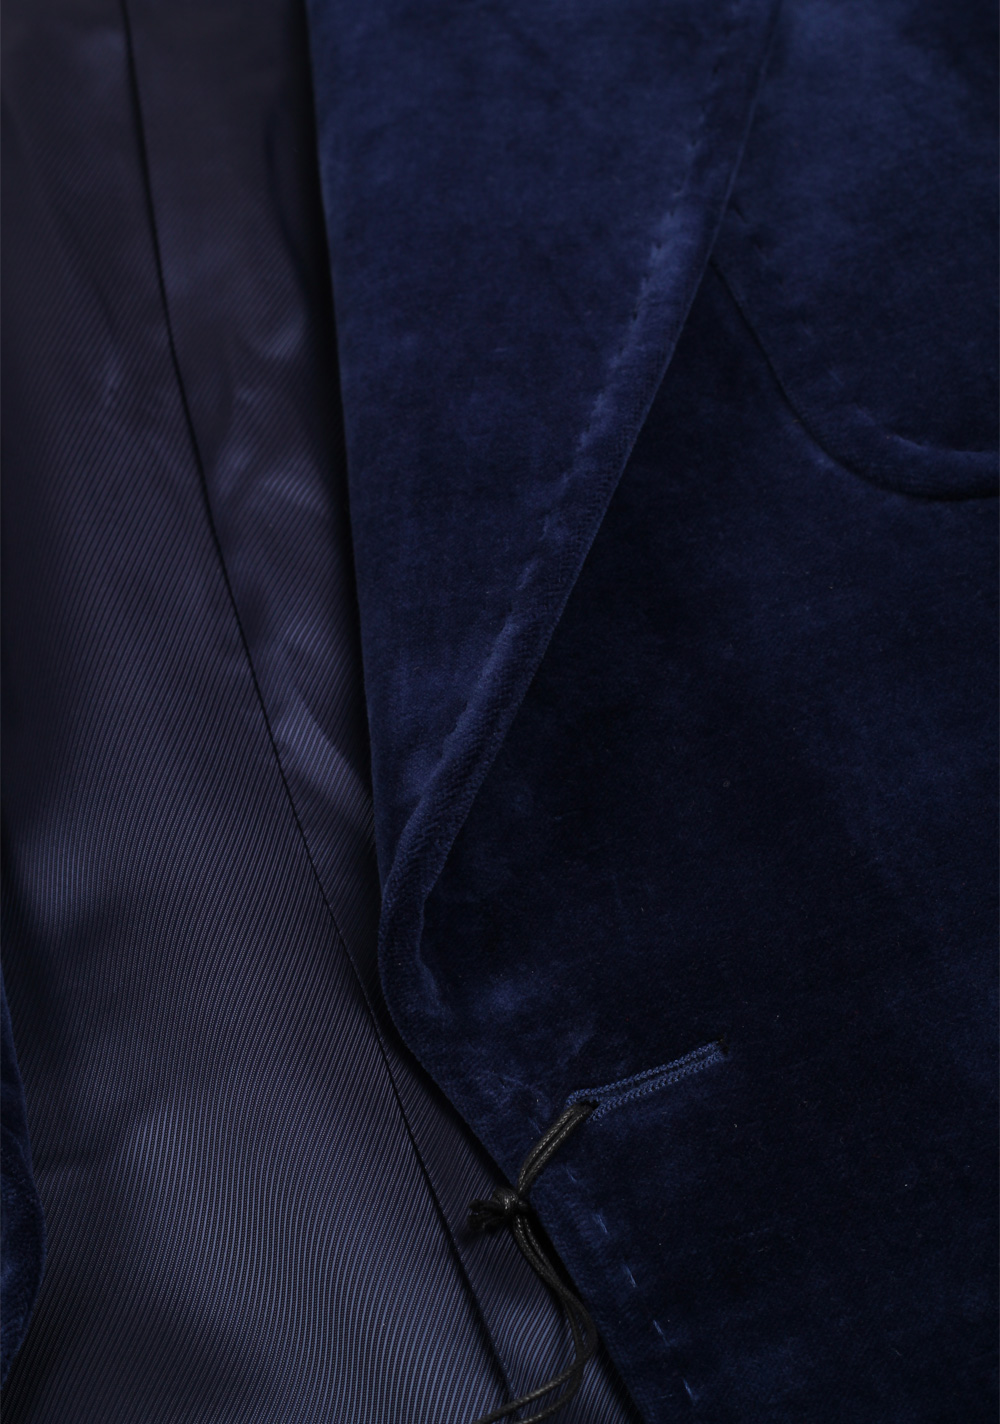 Gucci Blue Velvet Blazer Sport Coat | Costume Limité